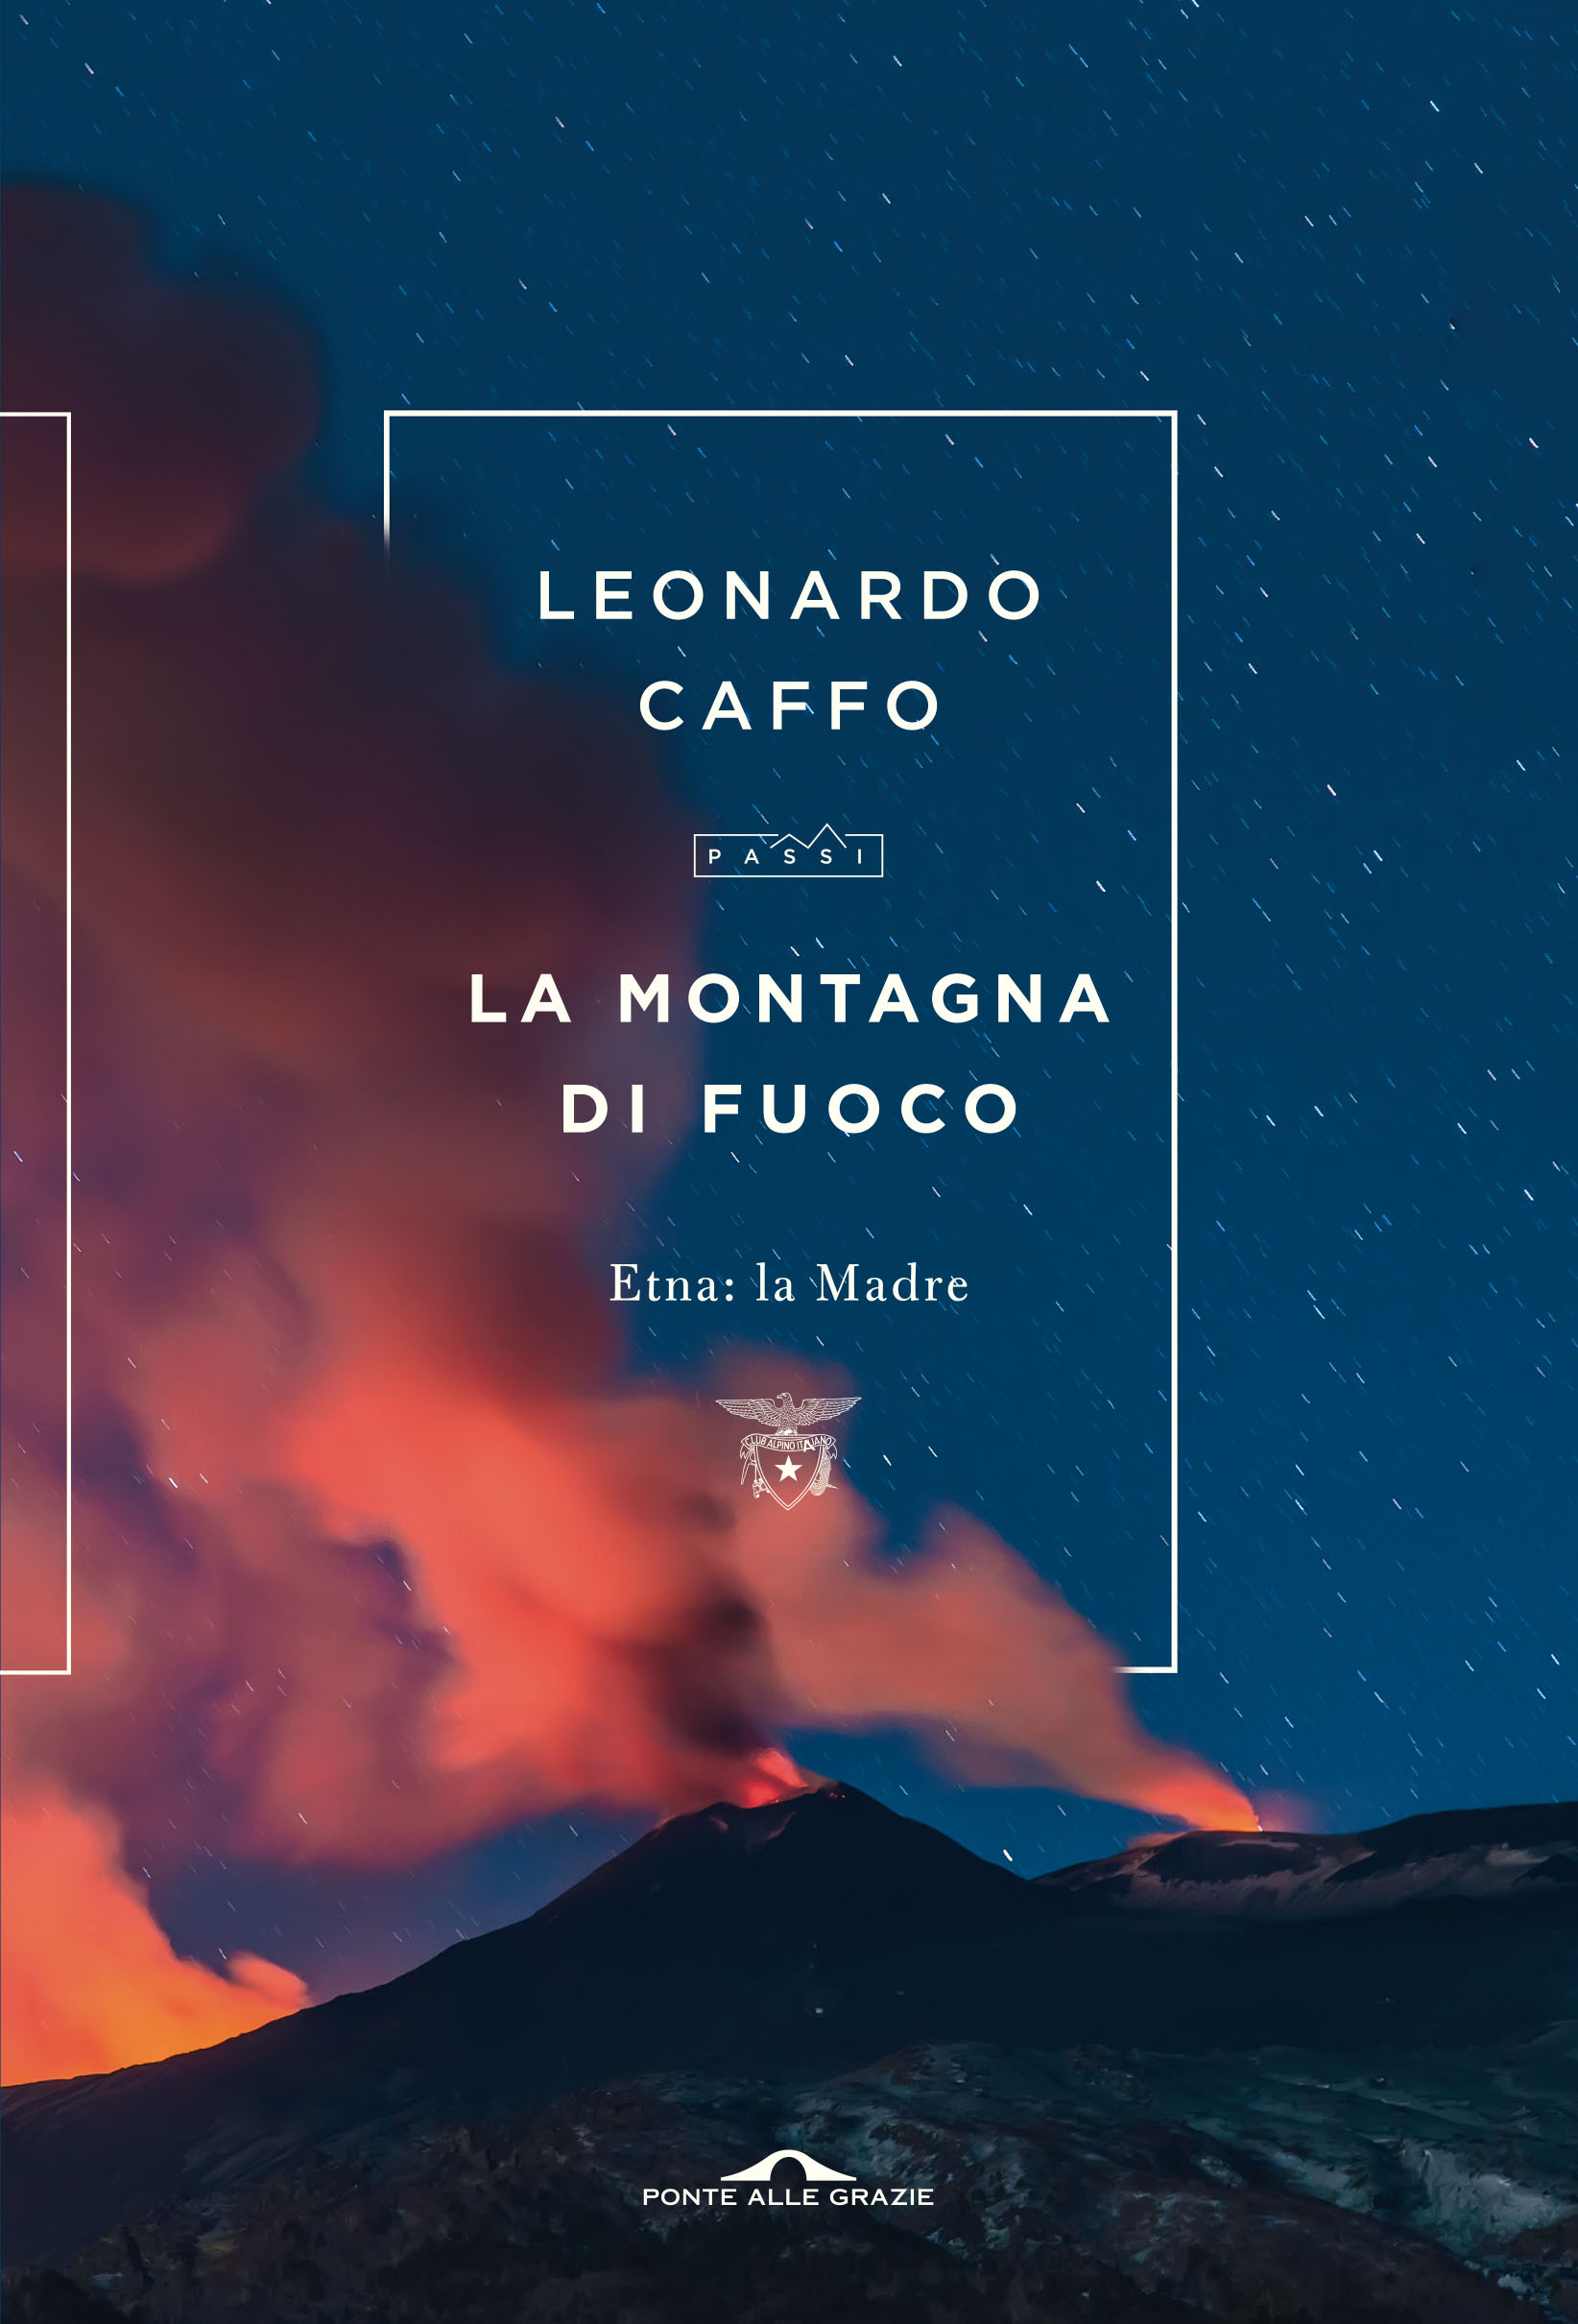 ‘La montagna di fuoco. Etna: la madre’, il nuovo libro di Leonardo Caffo